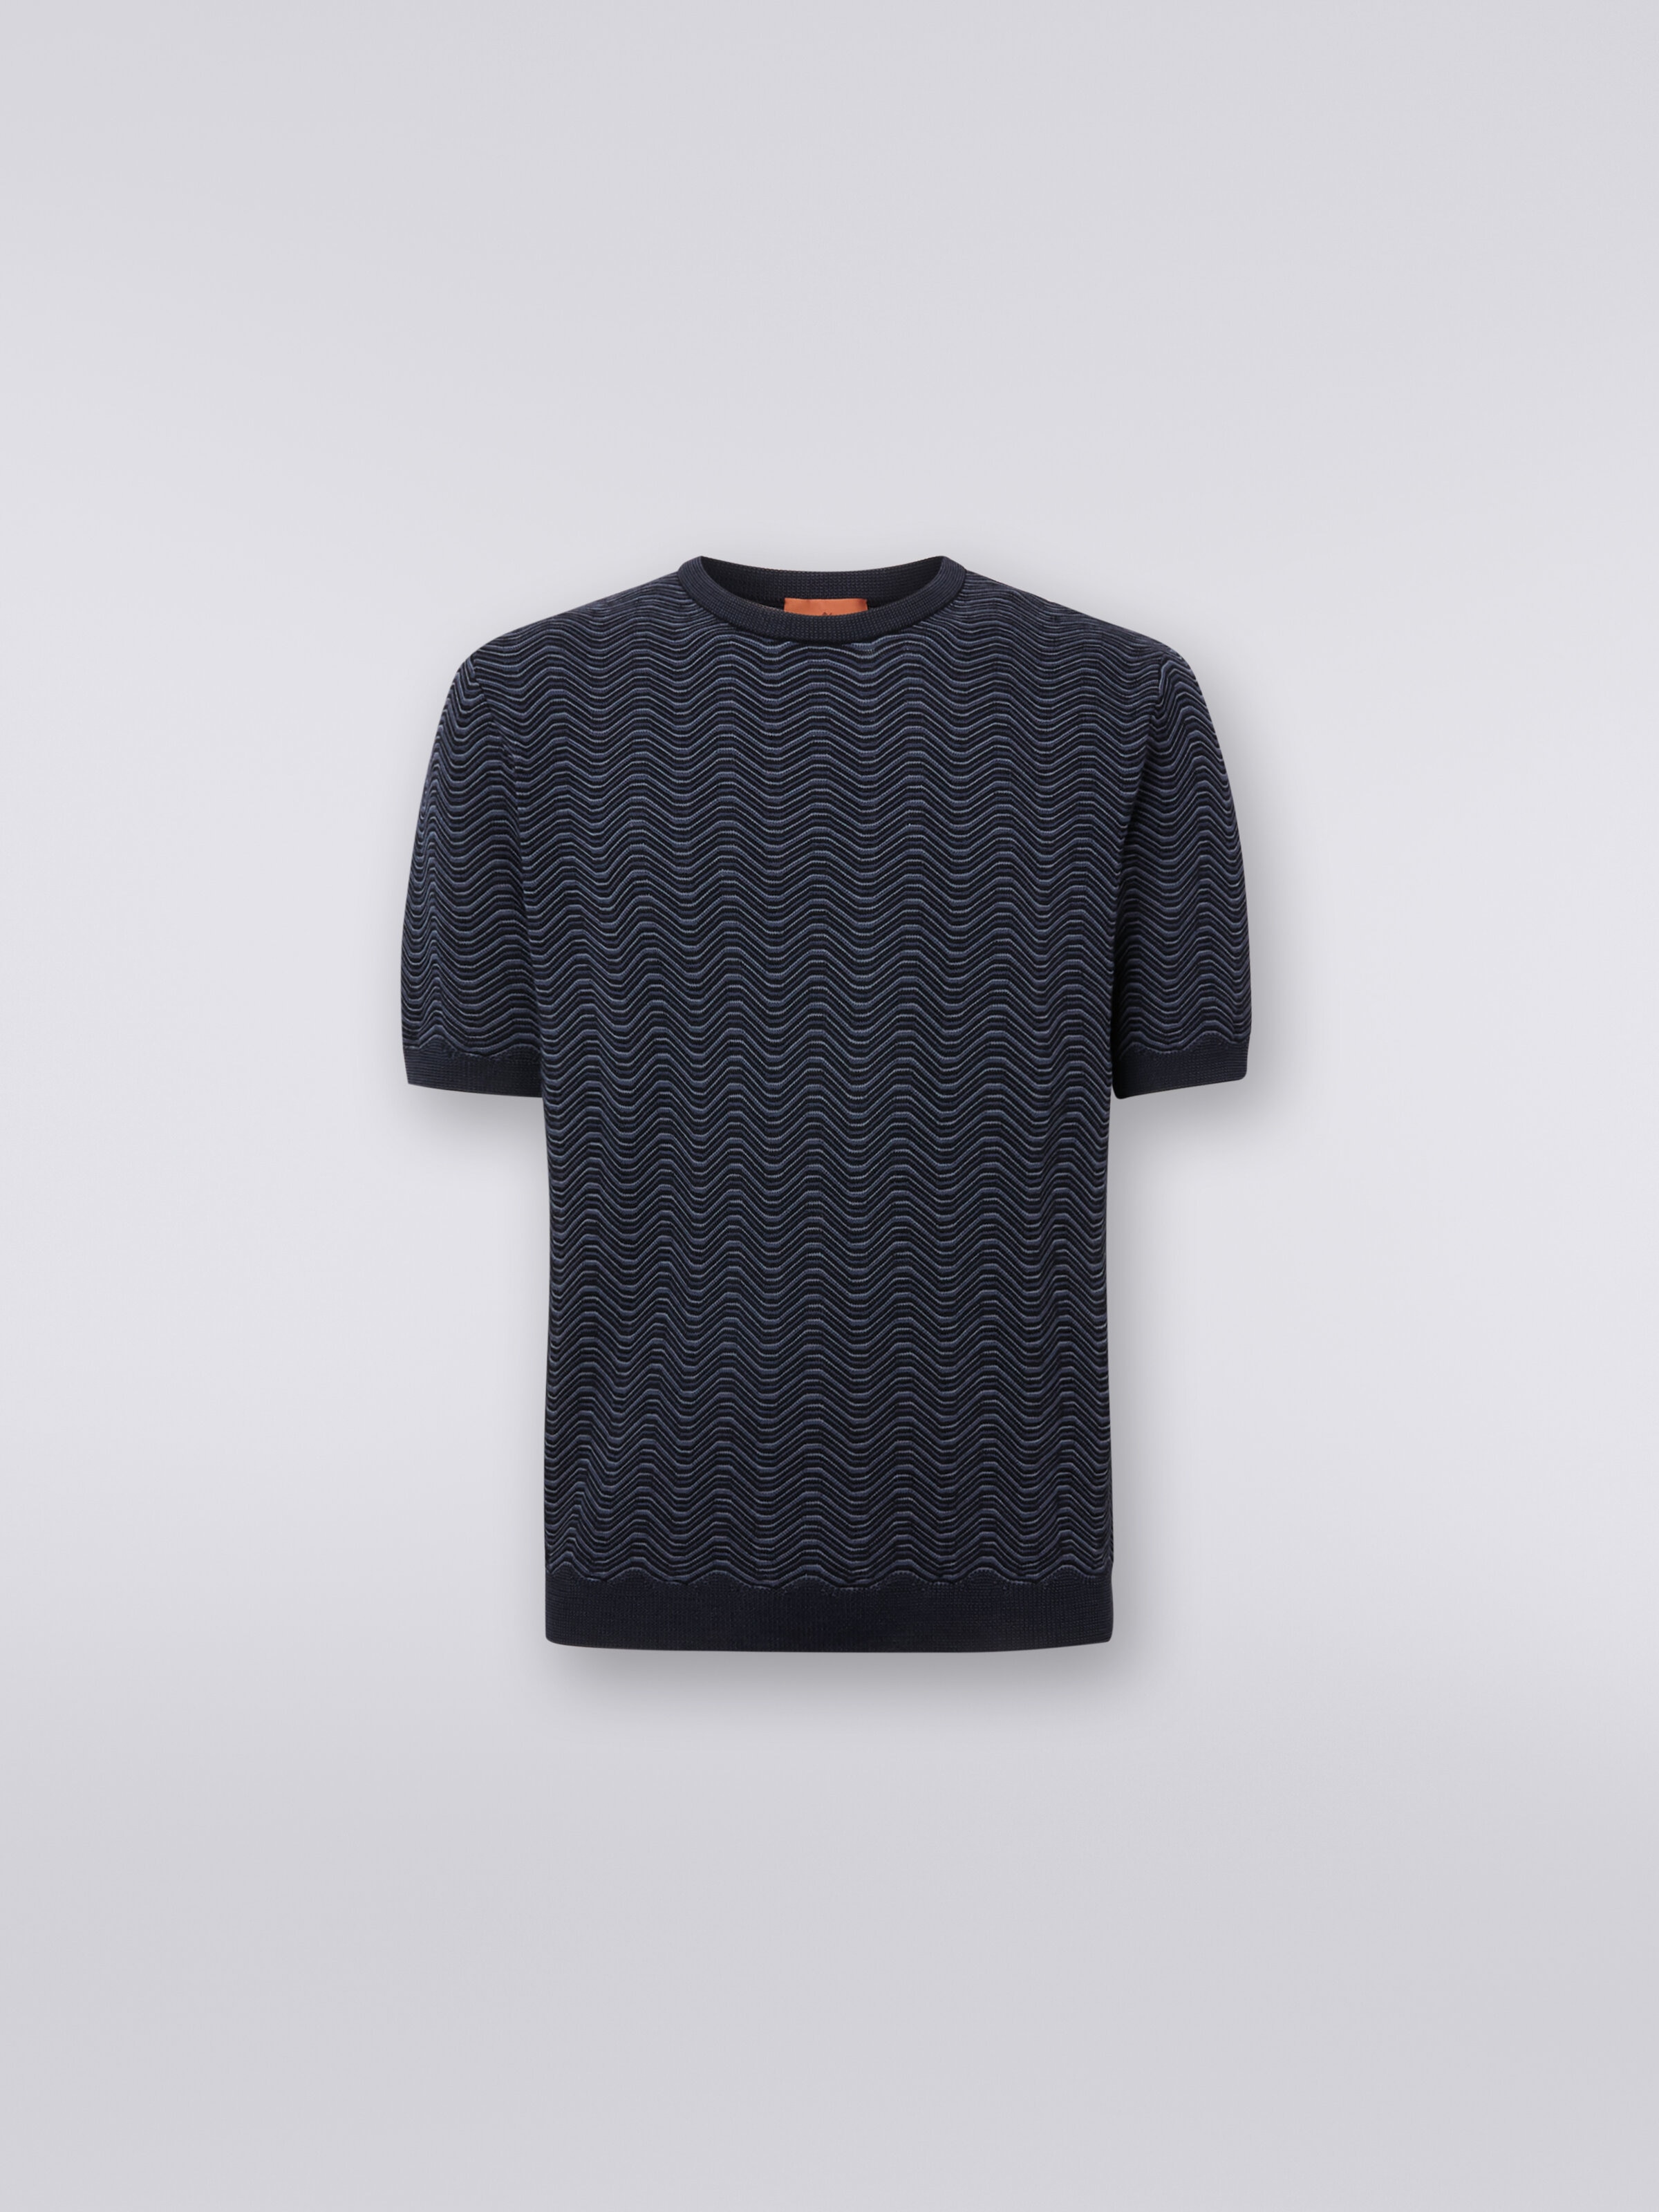 T-Shirt aus Wolle und Viskose, mit Rundhalsausschnitt und Wellenmotiv, Weiß, Schwarz & Beige - 0